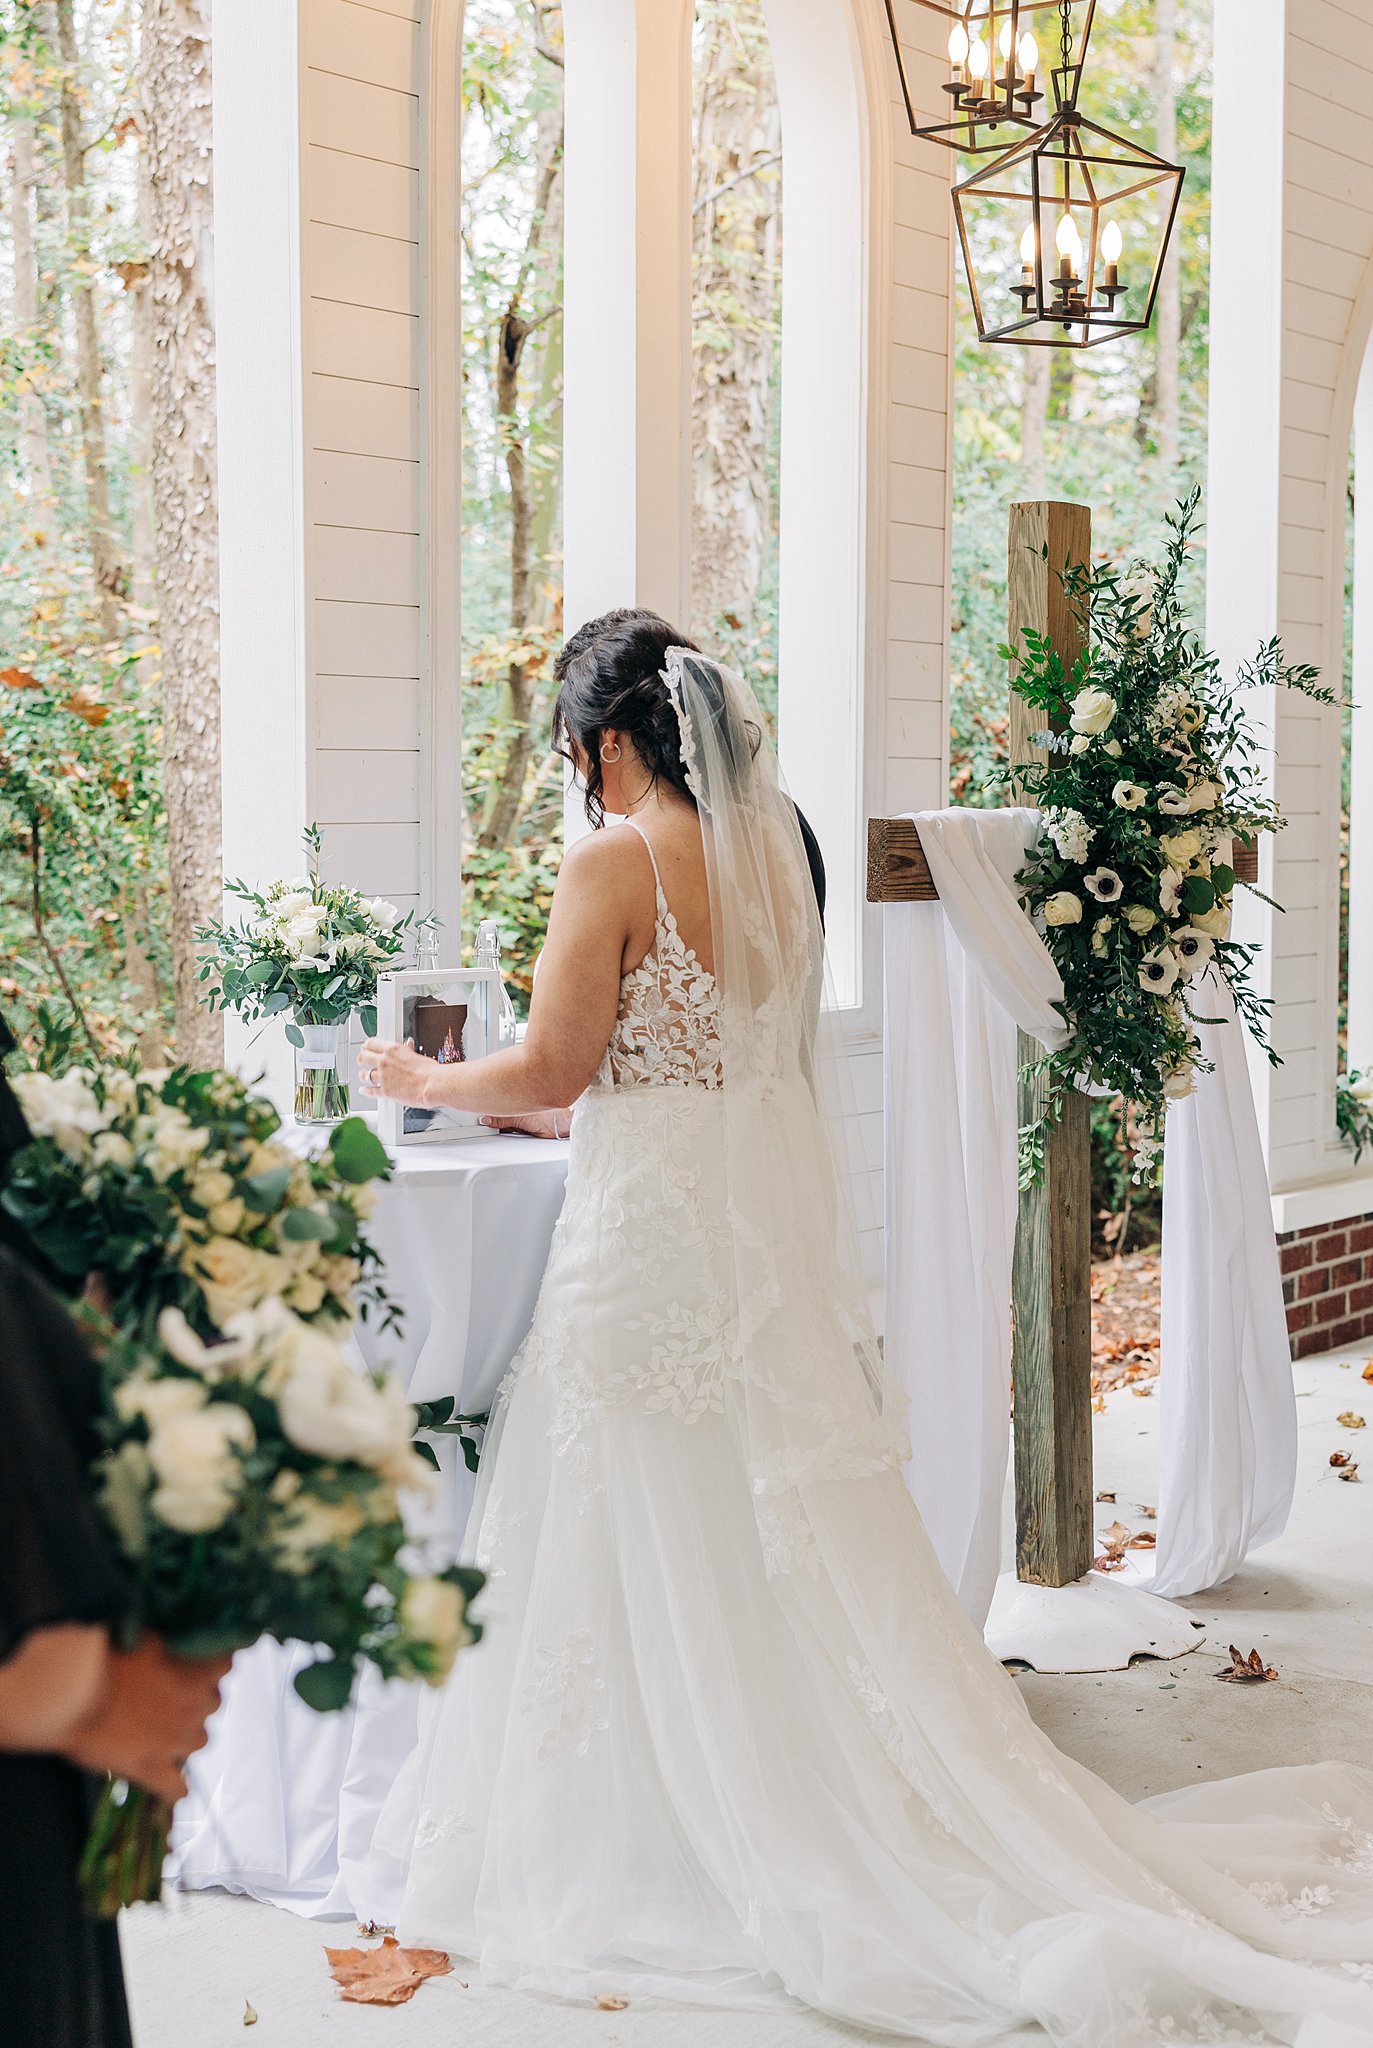 A bride adjusts details of her wedding ceremony set up on the altar